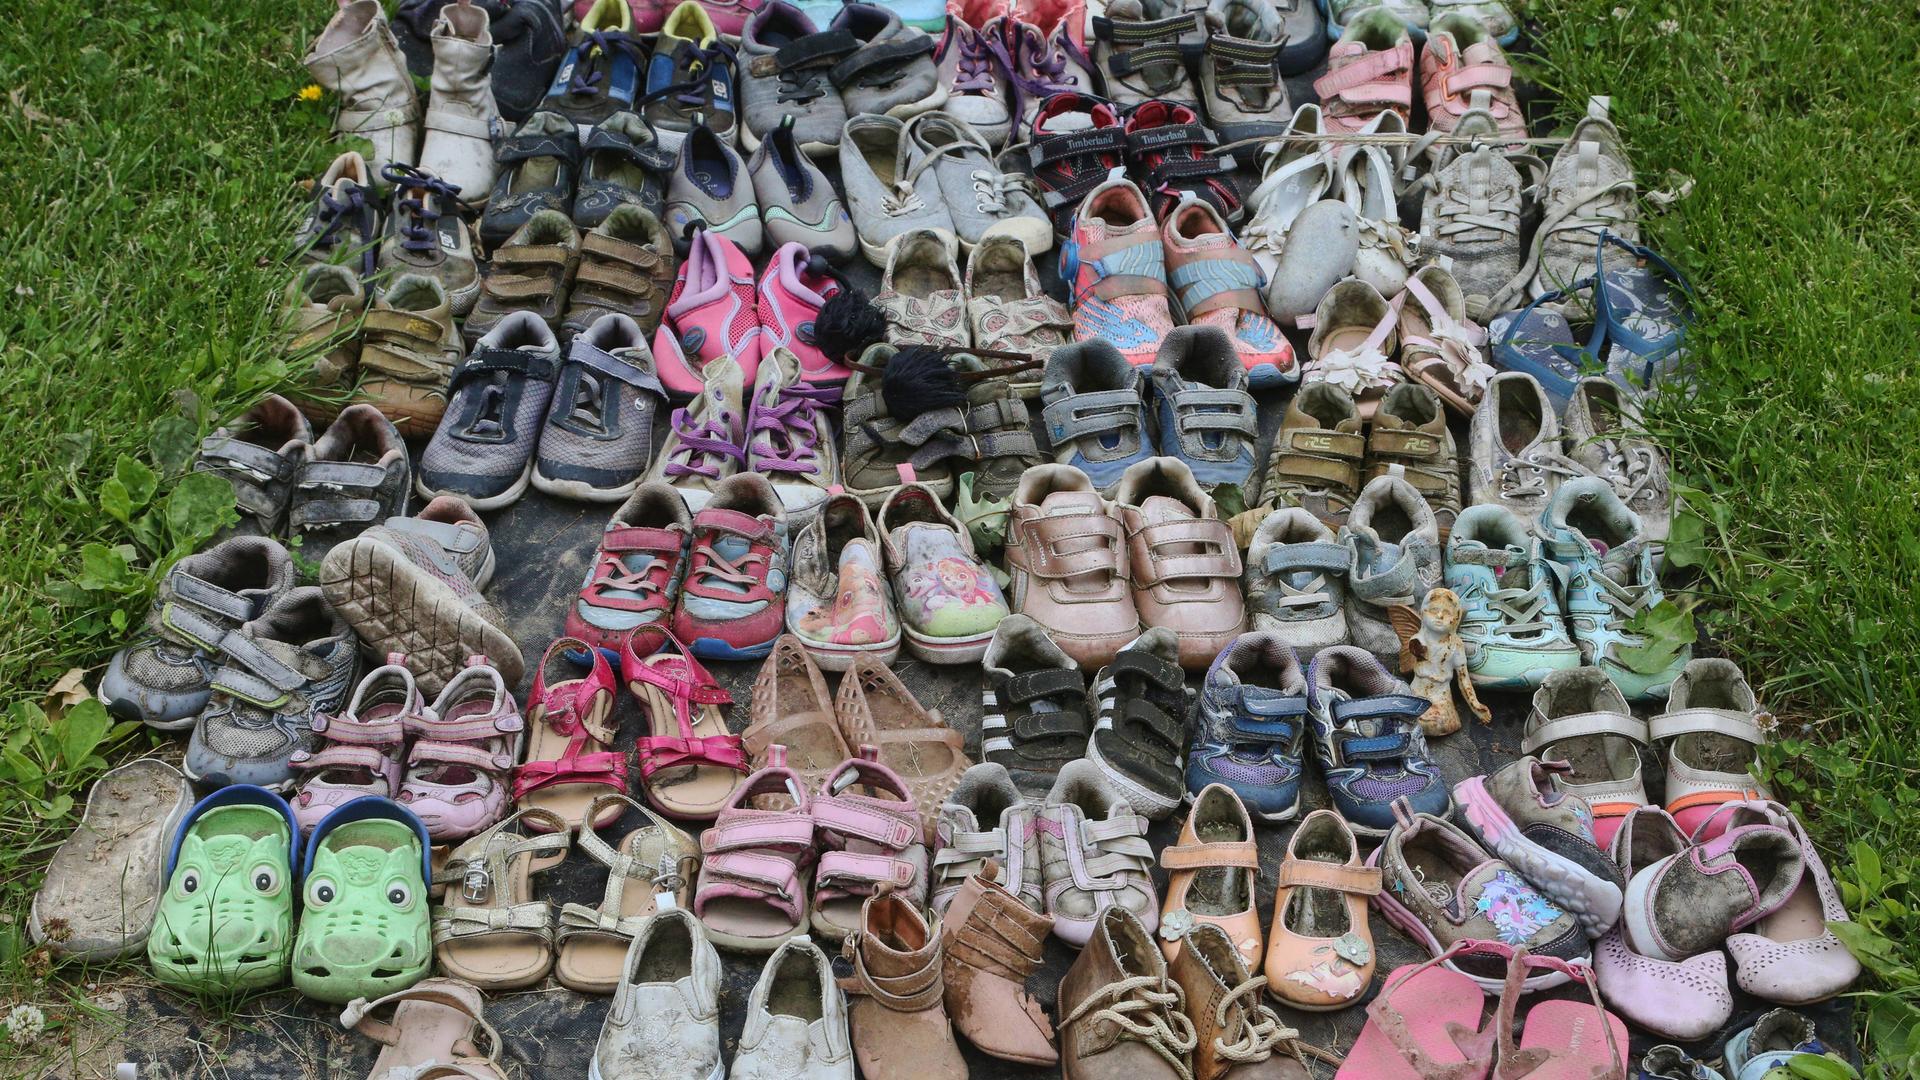 Ende Mai 2022 wurden die sterblichen Überreste von 215 Kindern auf dem Gelände der Kamloops Residential School (British Colombia) gefunden. Die Schuhe sollen an die Opfer erinnern.